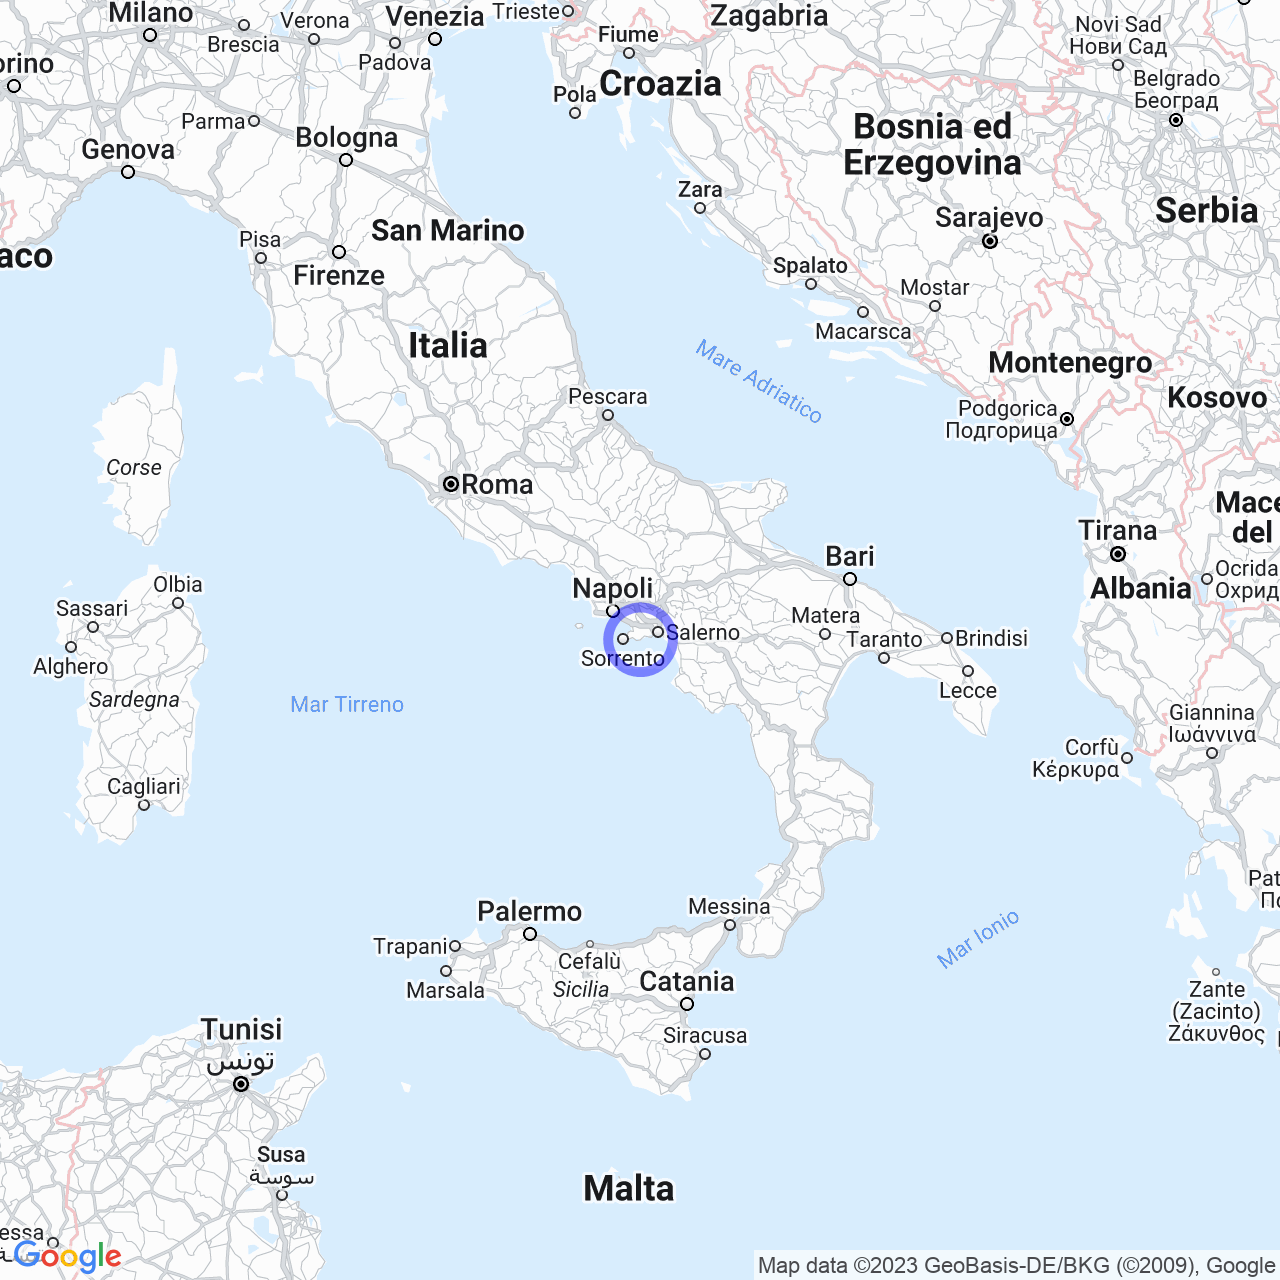 Conca dei Marini: the coastal village of the Amalfi Coast